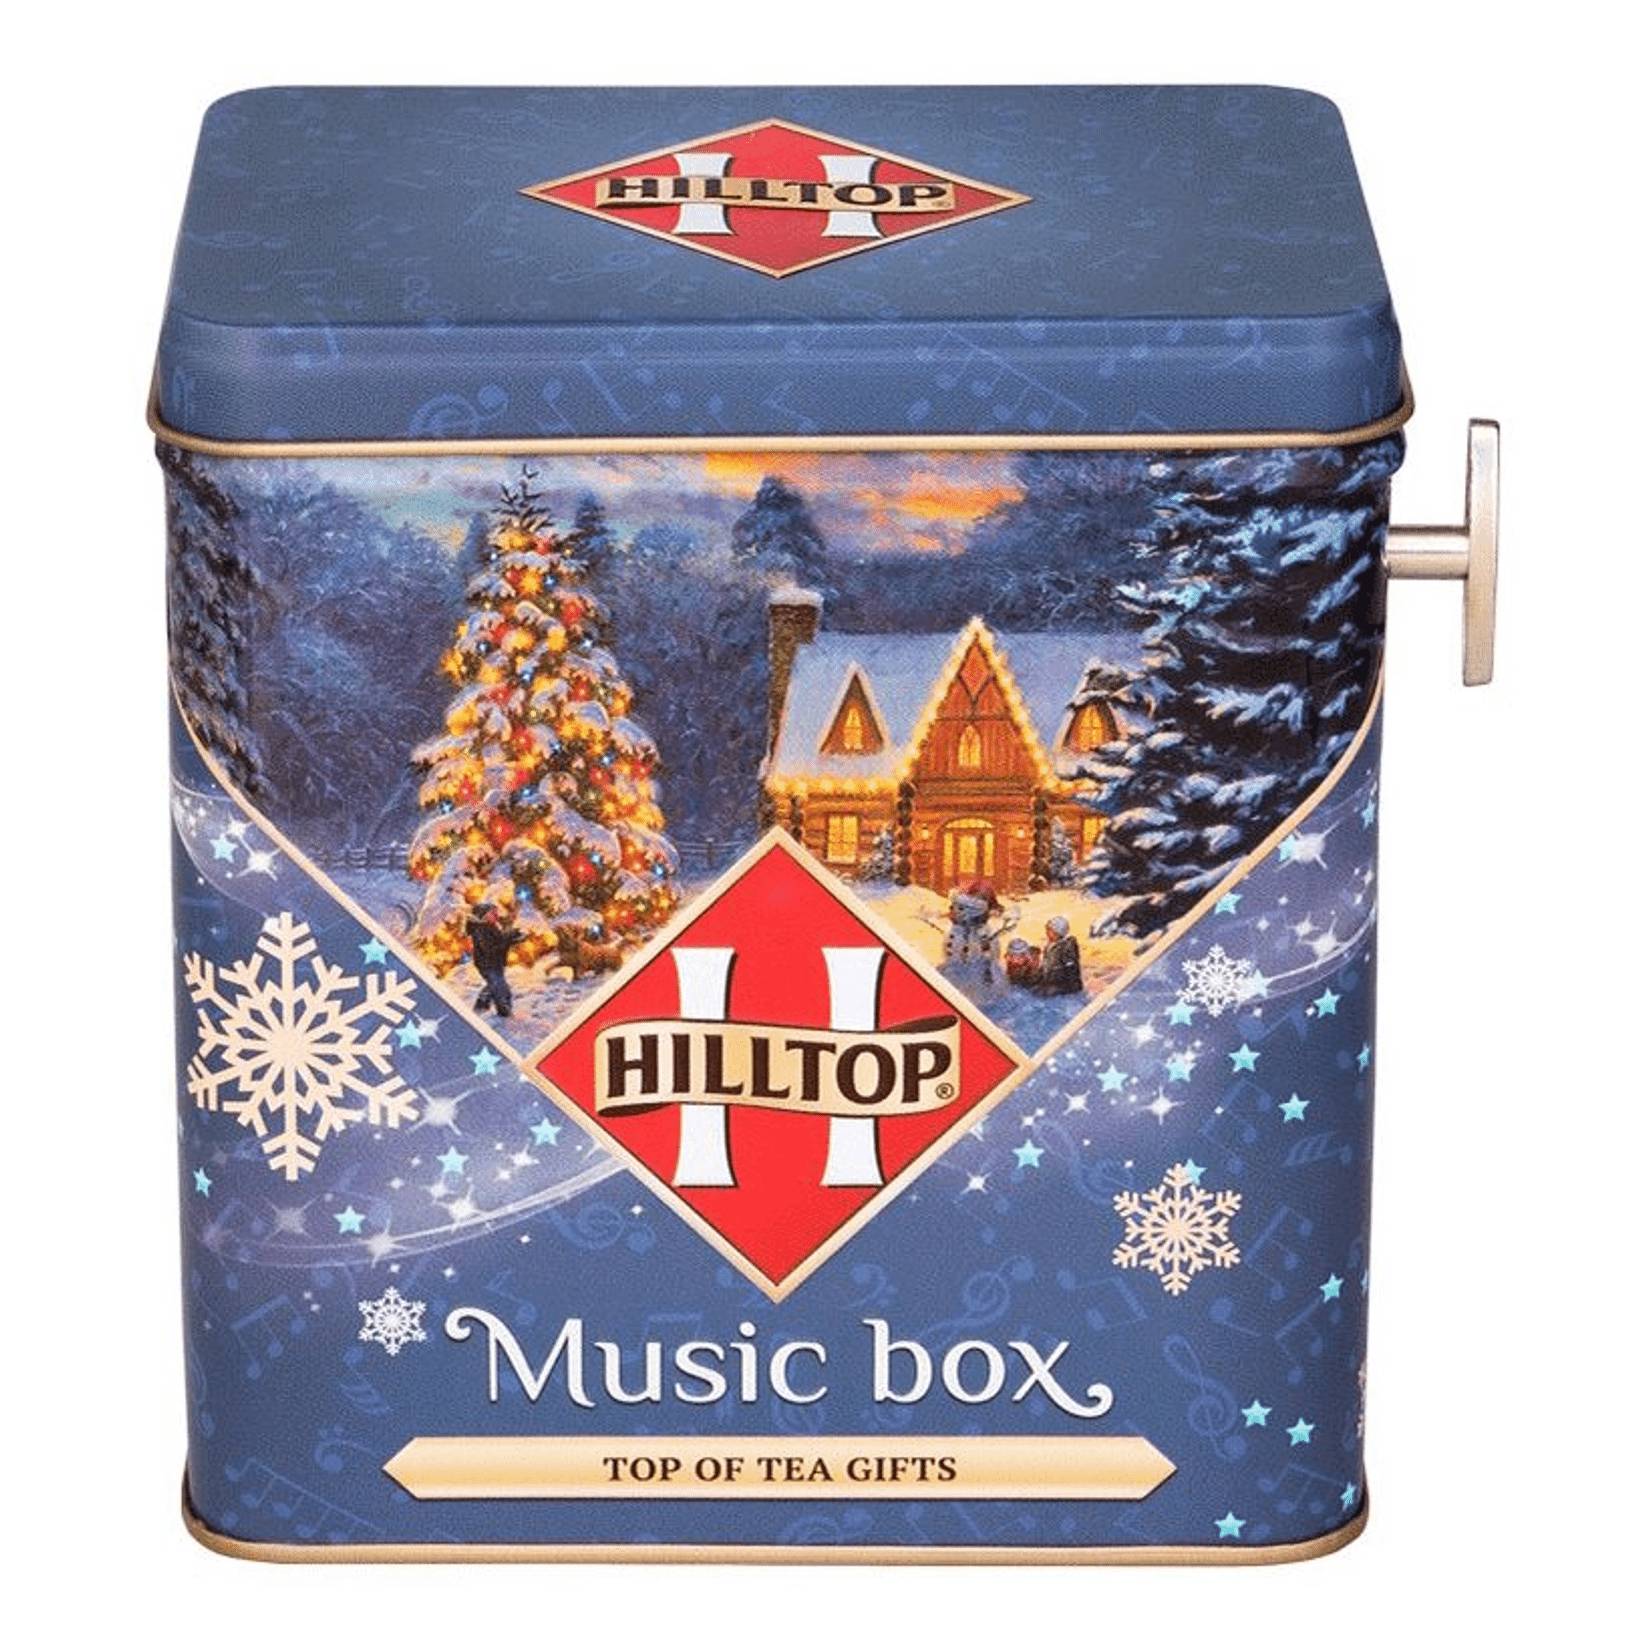 Чай черный листовой Hilltop Музыкальная шкатулка Эрл грей, 100 г чай chelton музыкальная шкатулка вдвоем 100 г жестяная банка